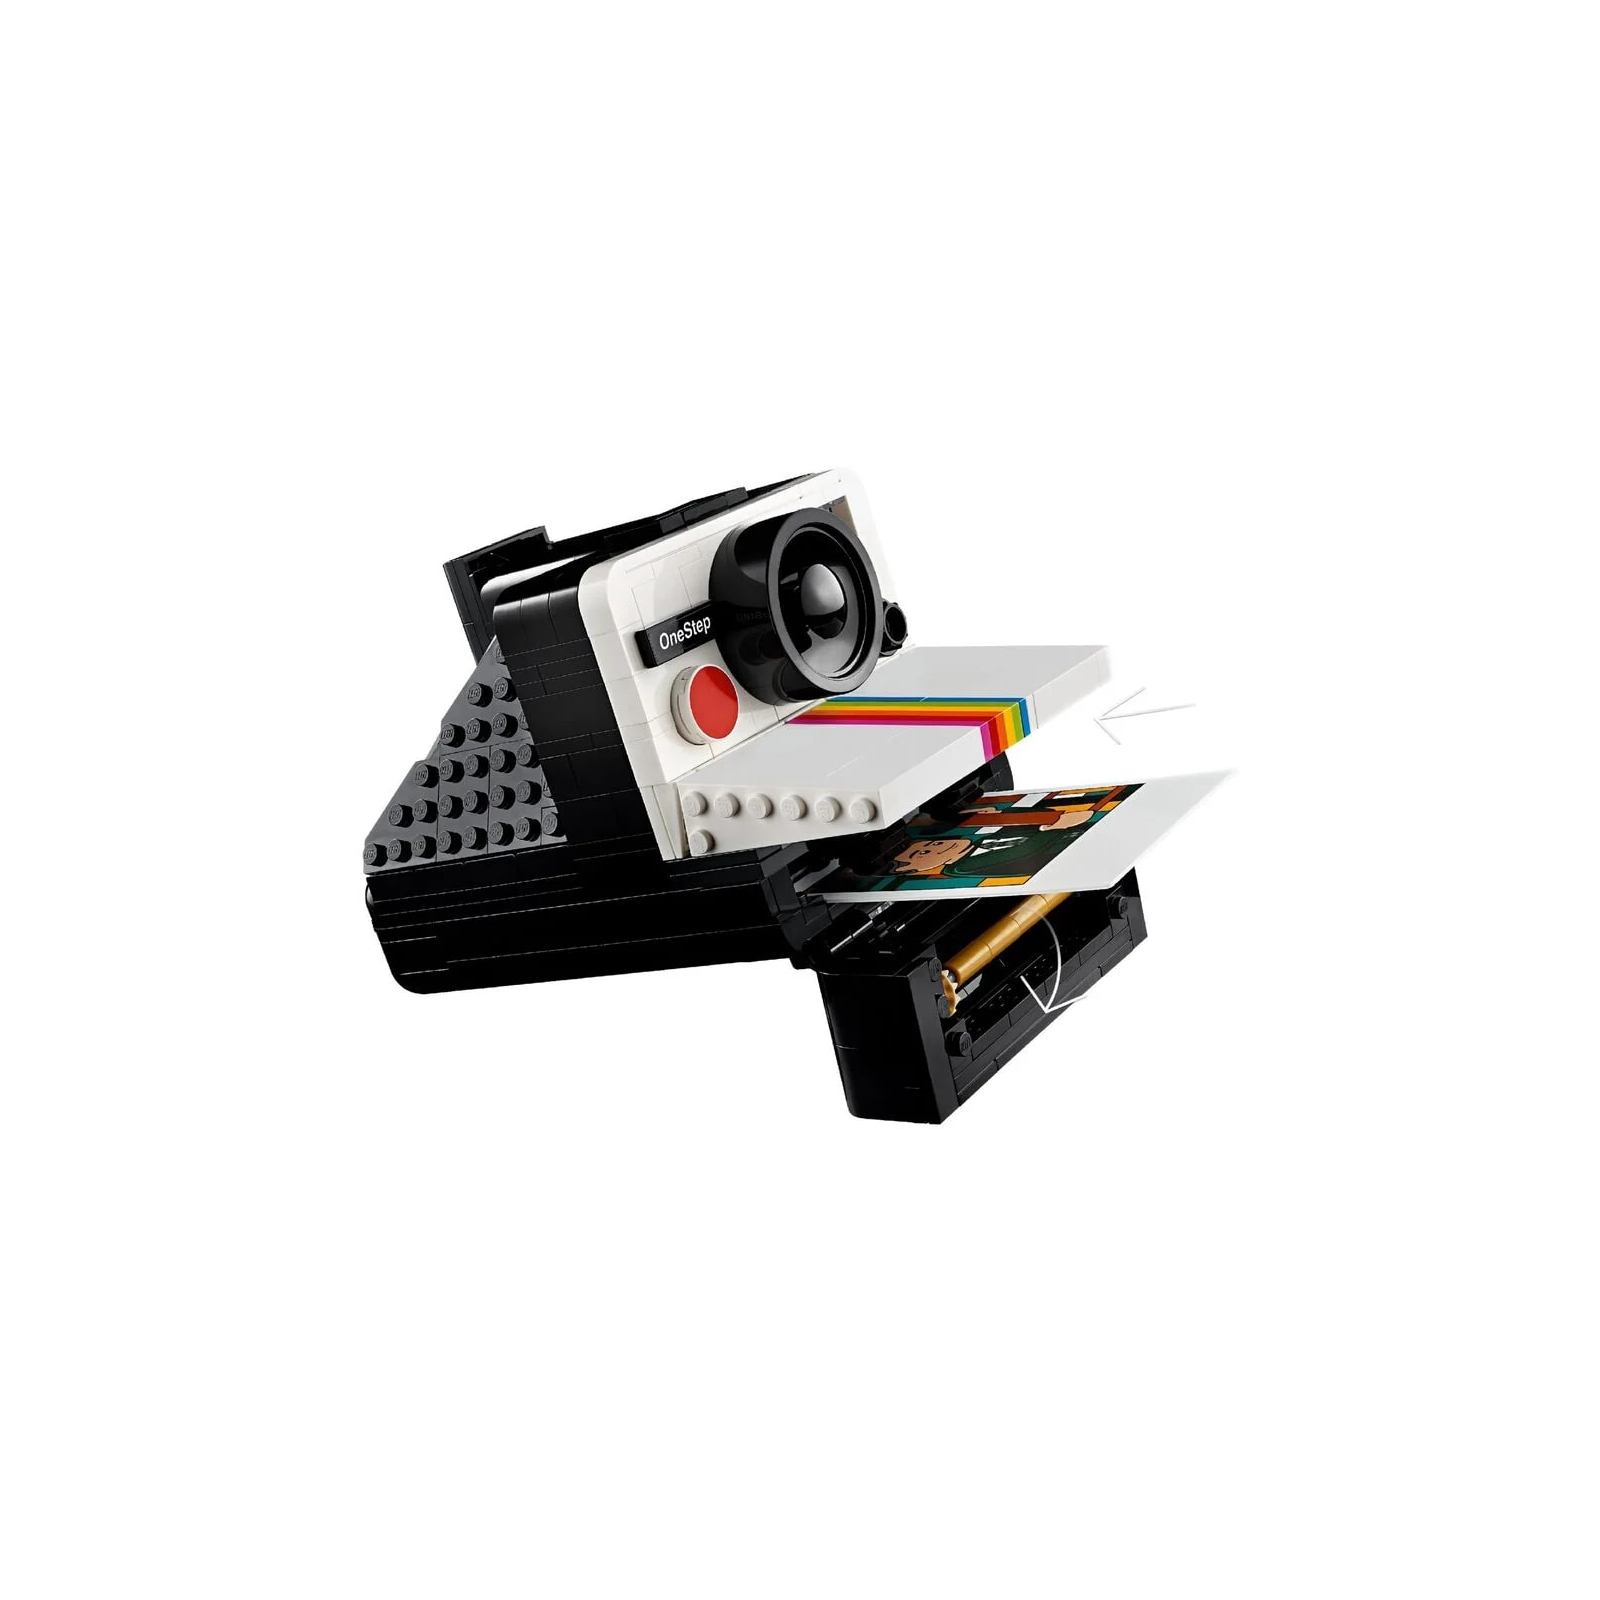 Конструктор LEGO Ideas Фотоаппарат Polaroid OneStep SX-70 516 деталей (21345-) изображение 6